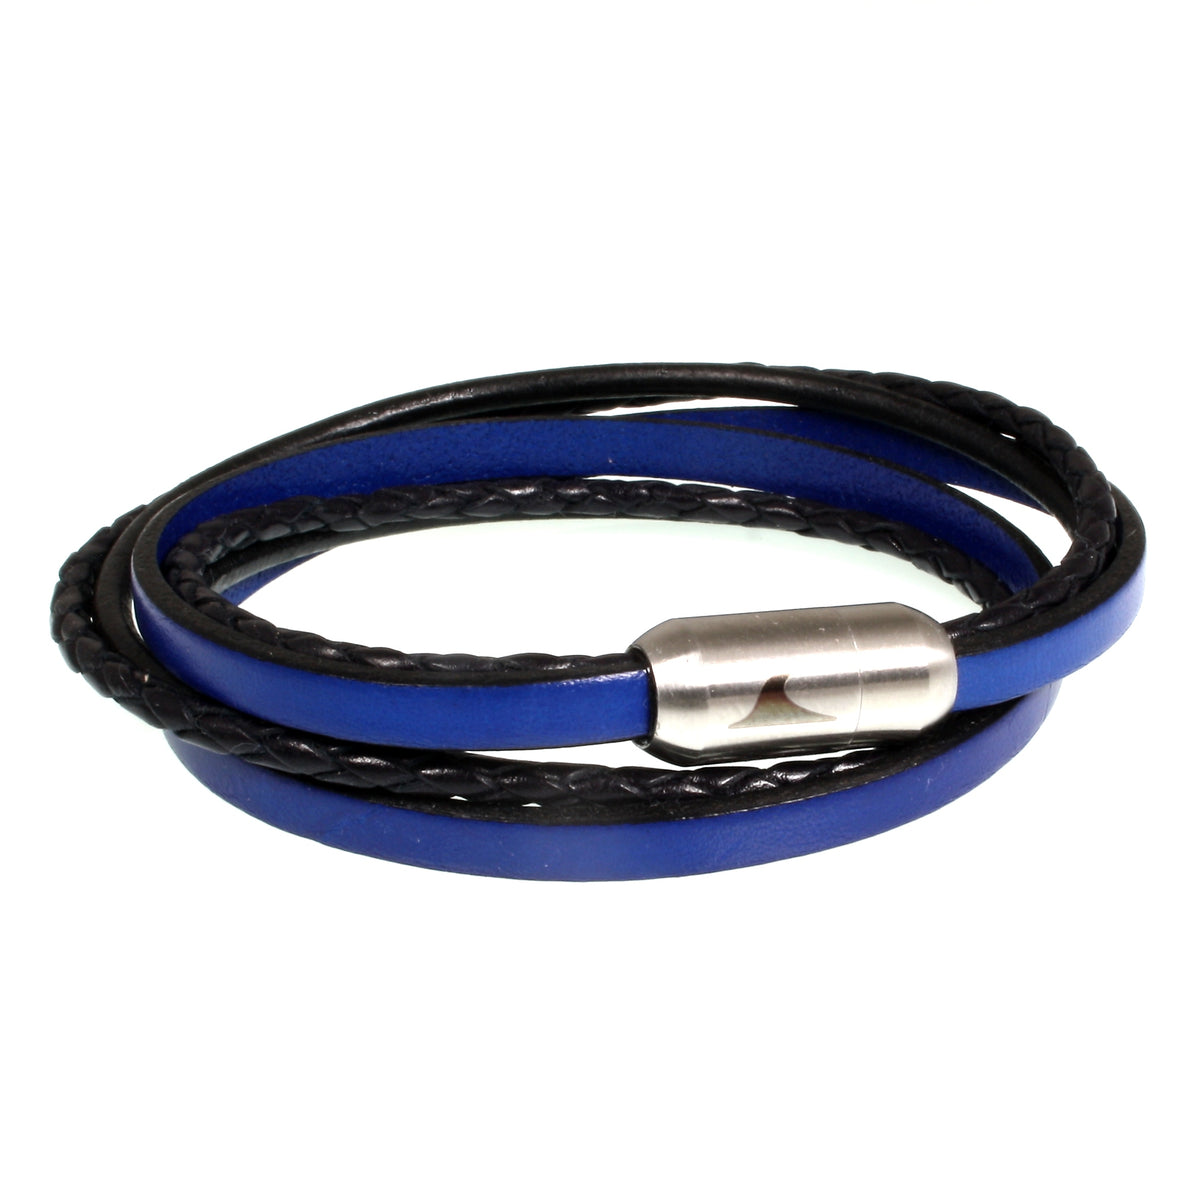 Herren-Leder-Armband-Mixed-schwarz-blau-rund-Edelstahlverschluss-vorn-wavepirate-shop-lf